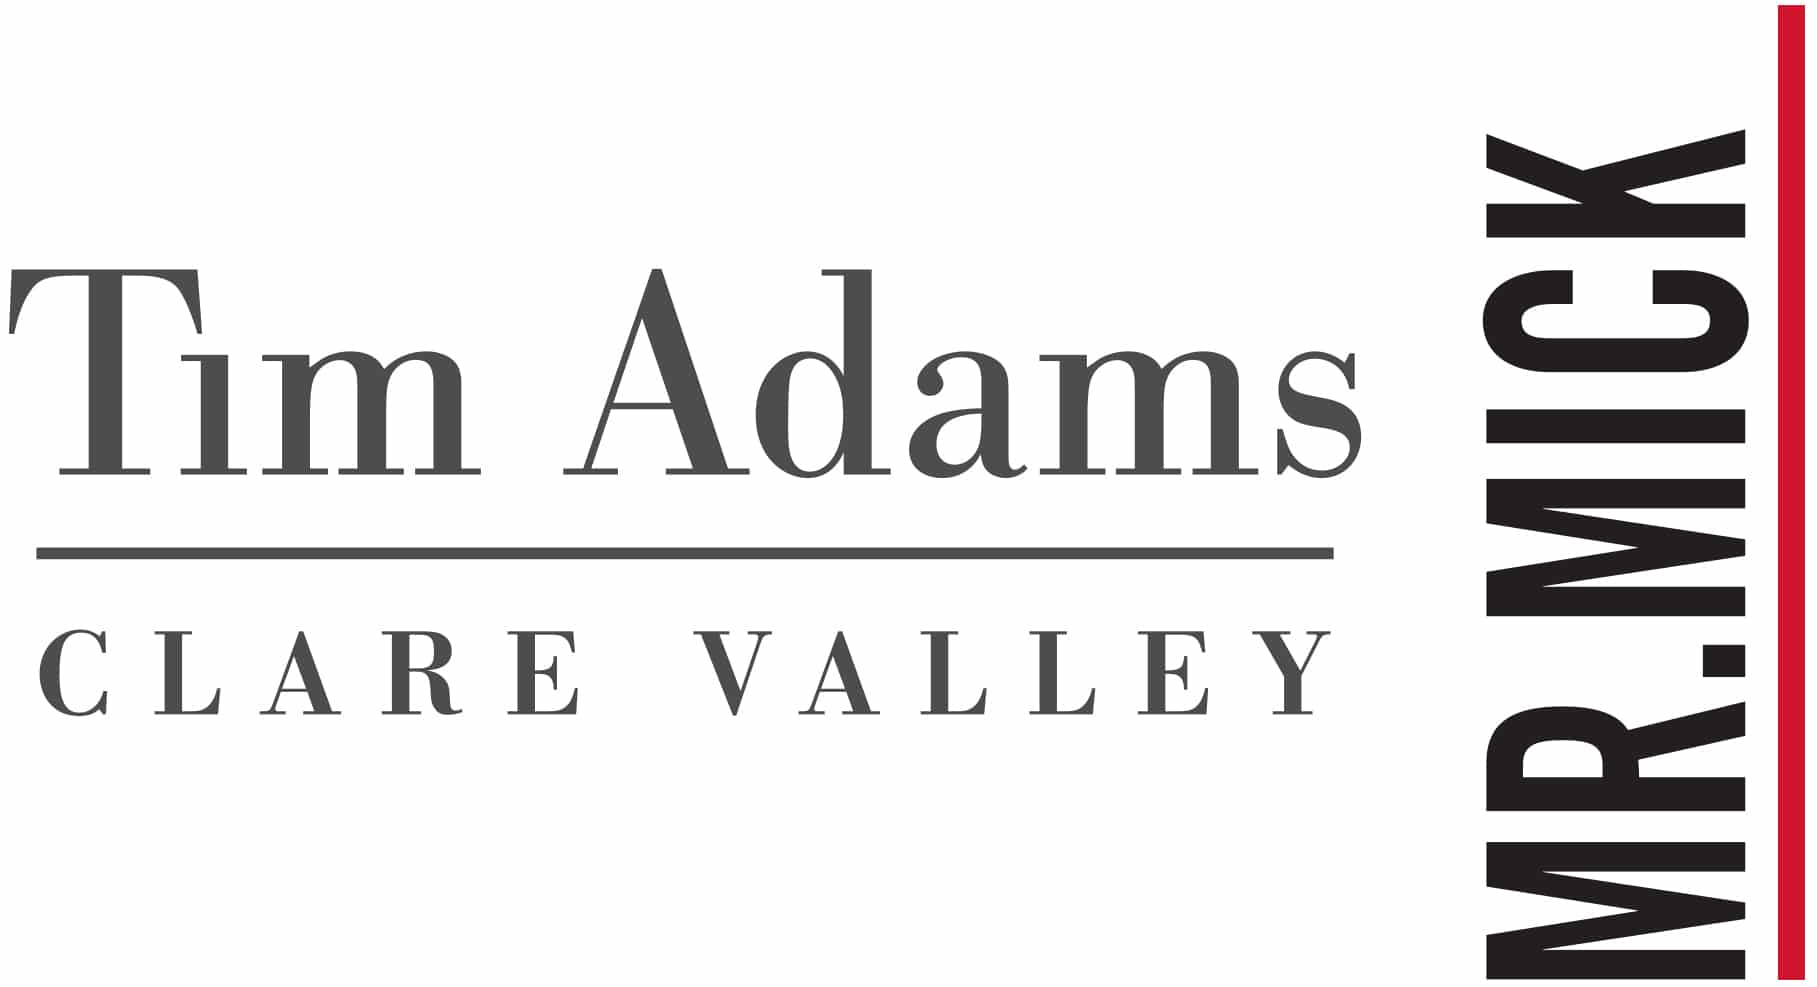 Tim Adams logo